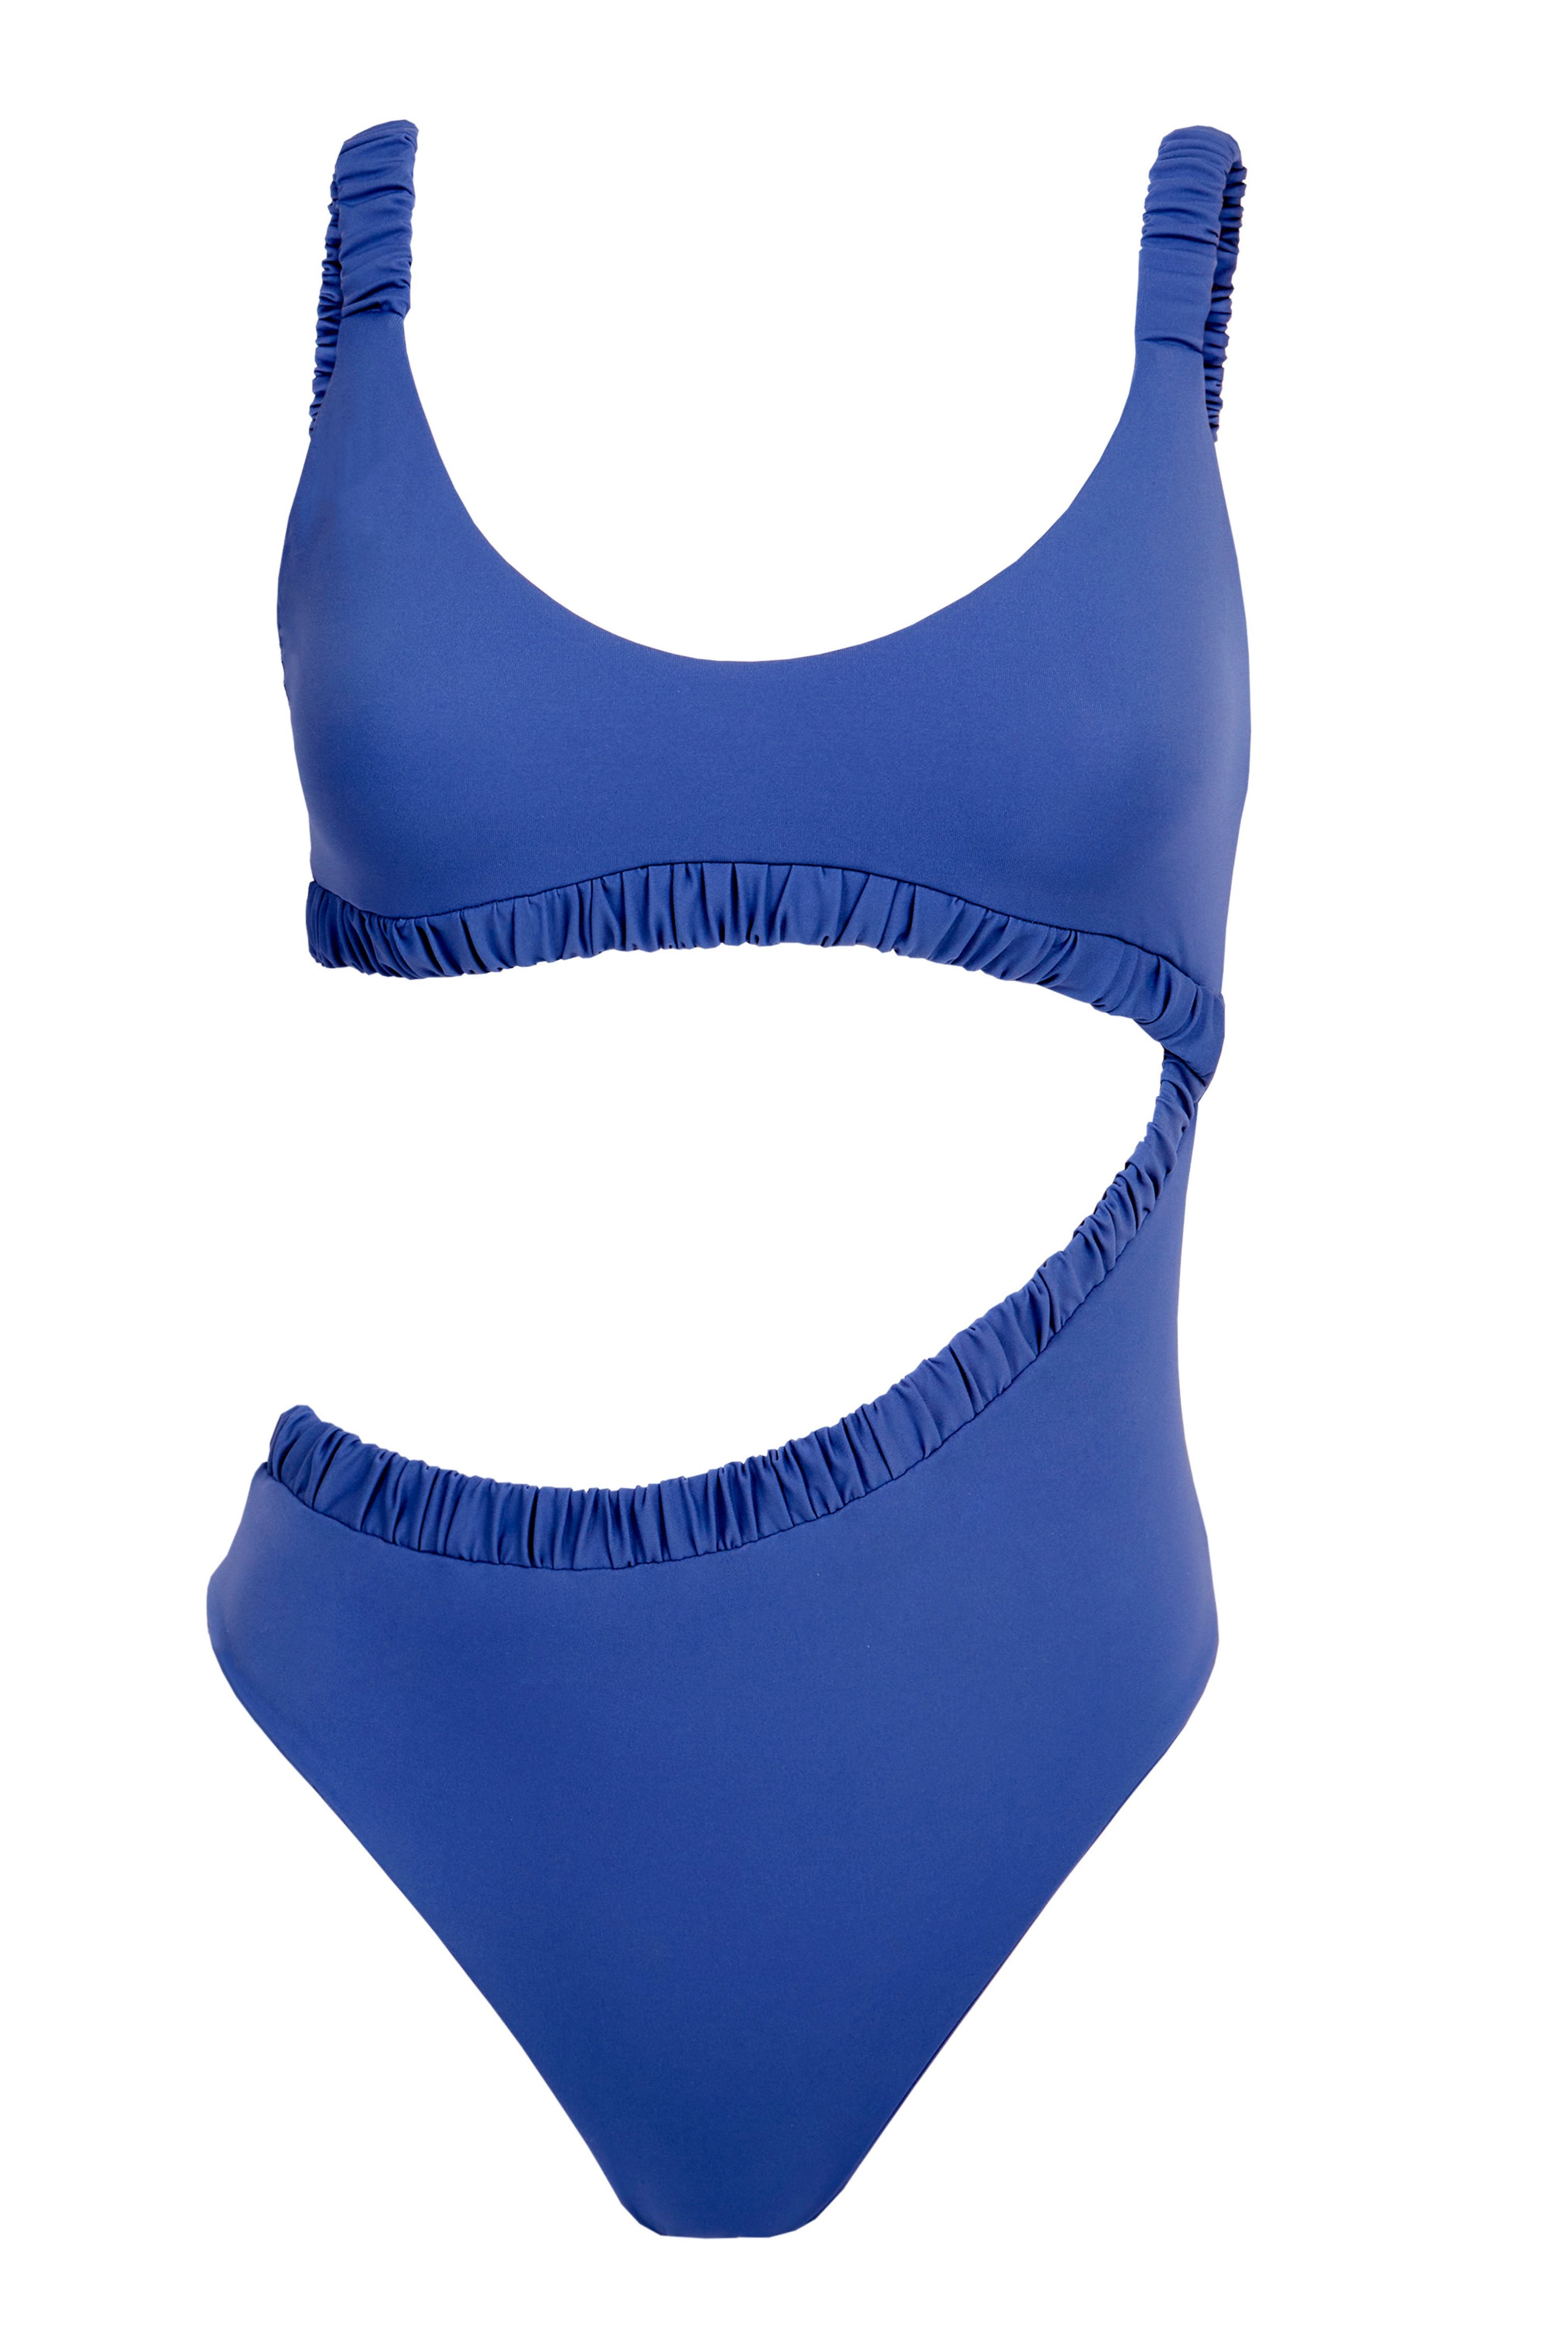 Daphne in Ocean Blue One-Piece Swimsuit Arloe 